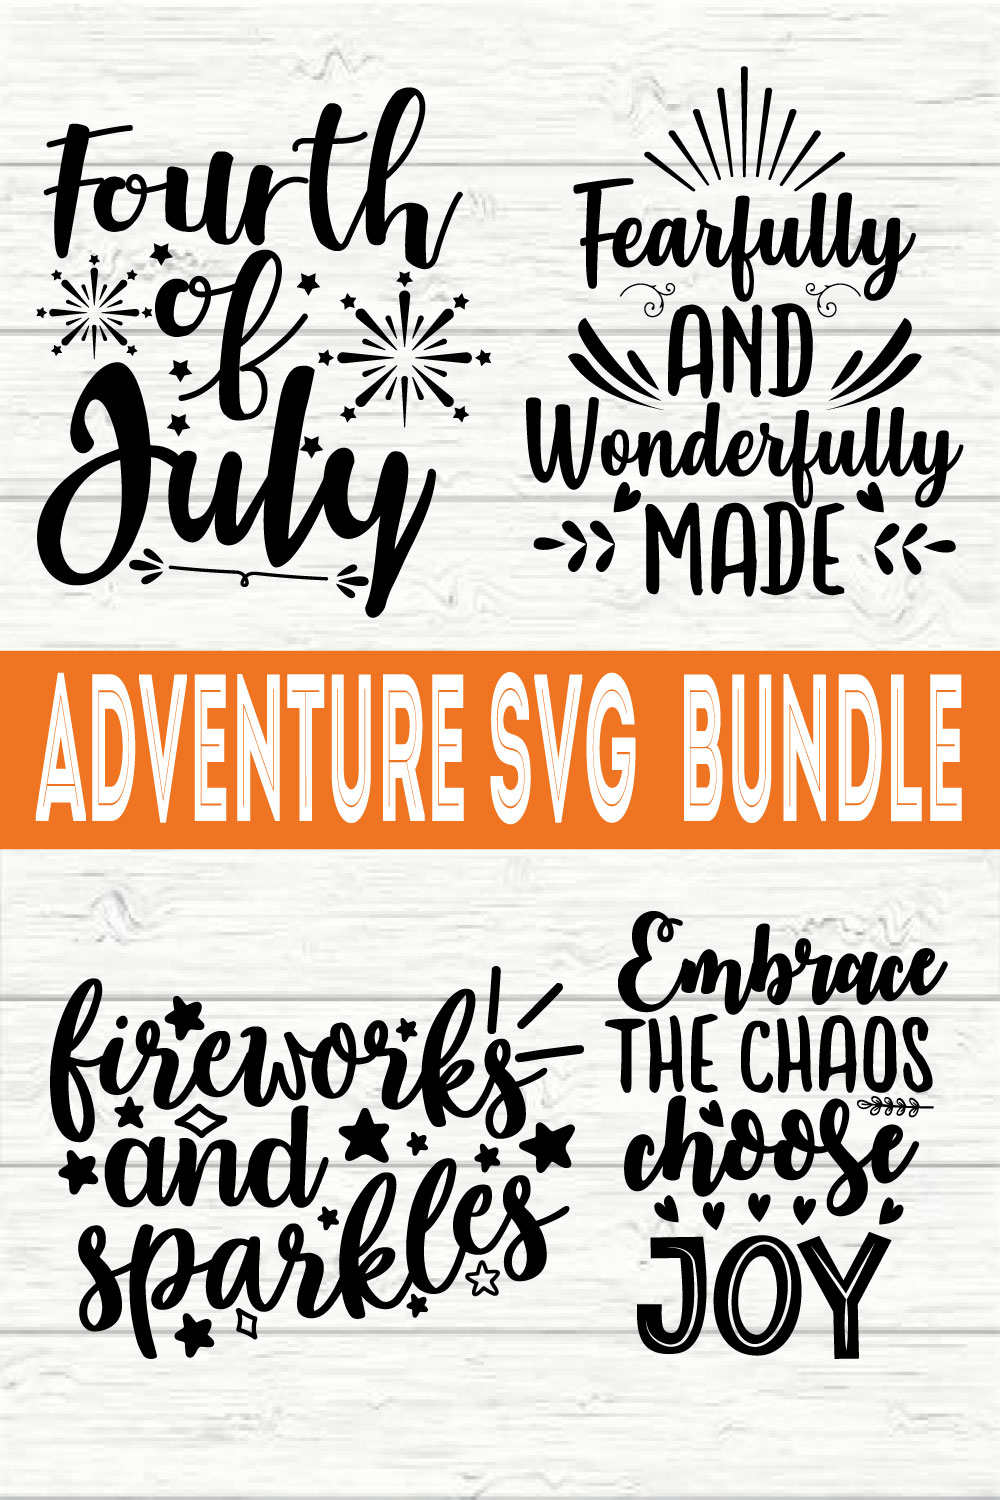 Adventure Design Bundle vol 10 pinterest preview image.